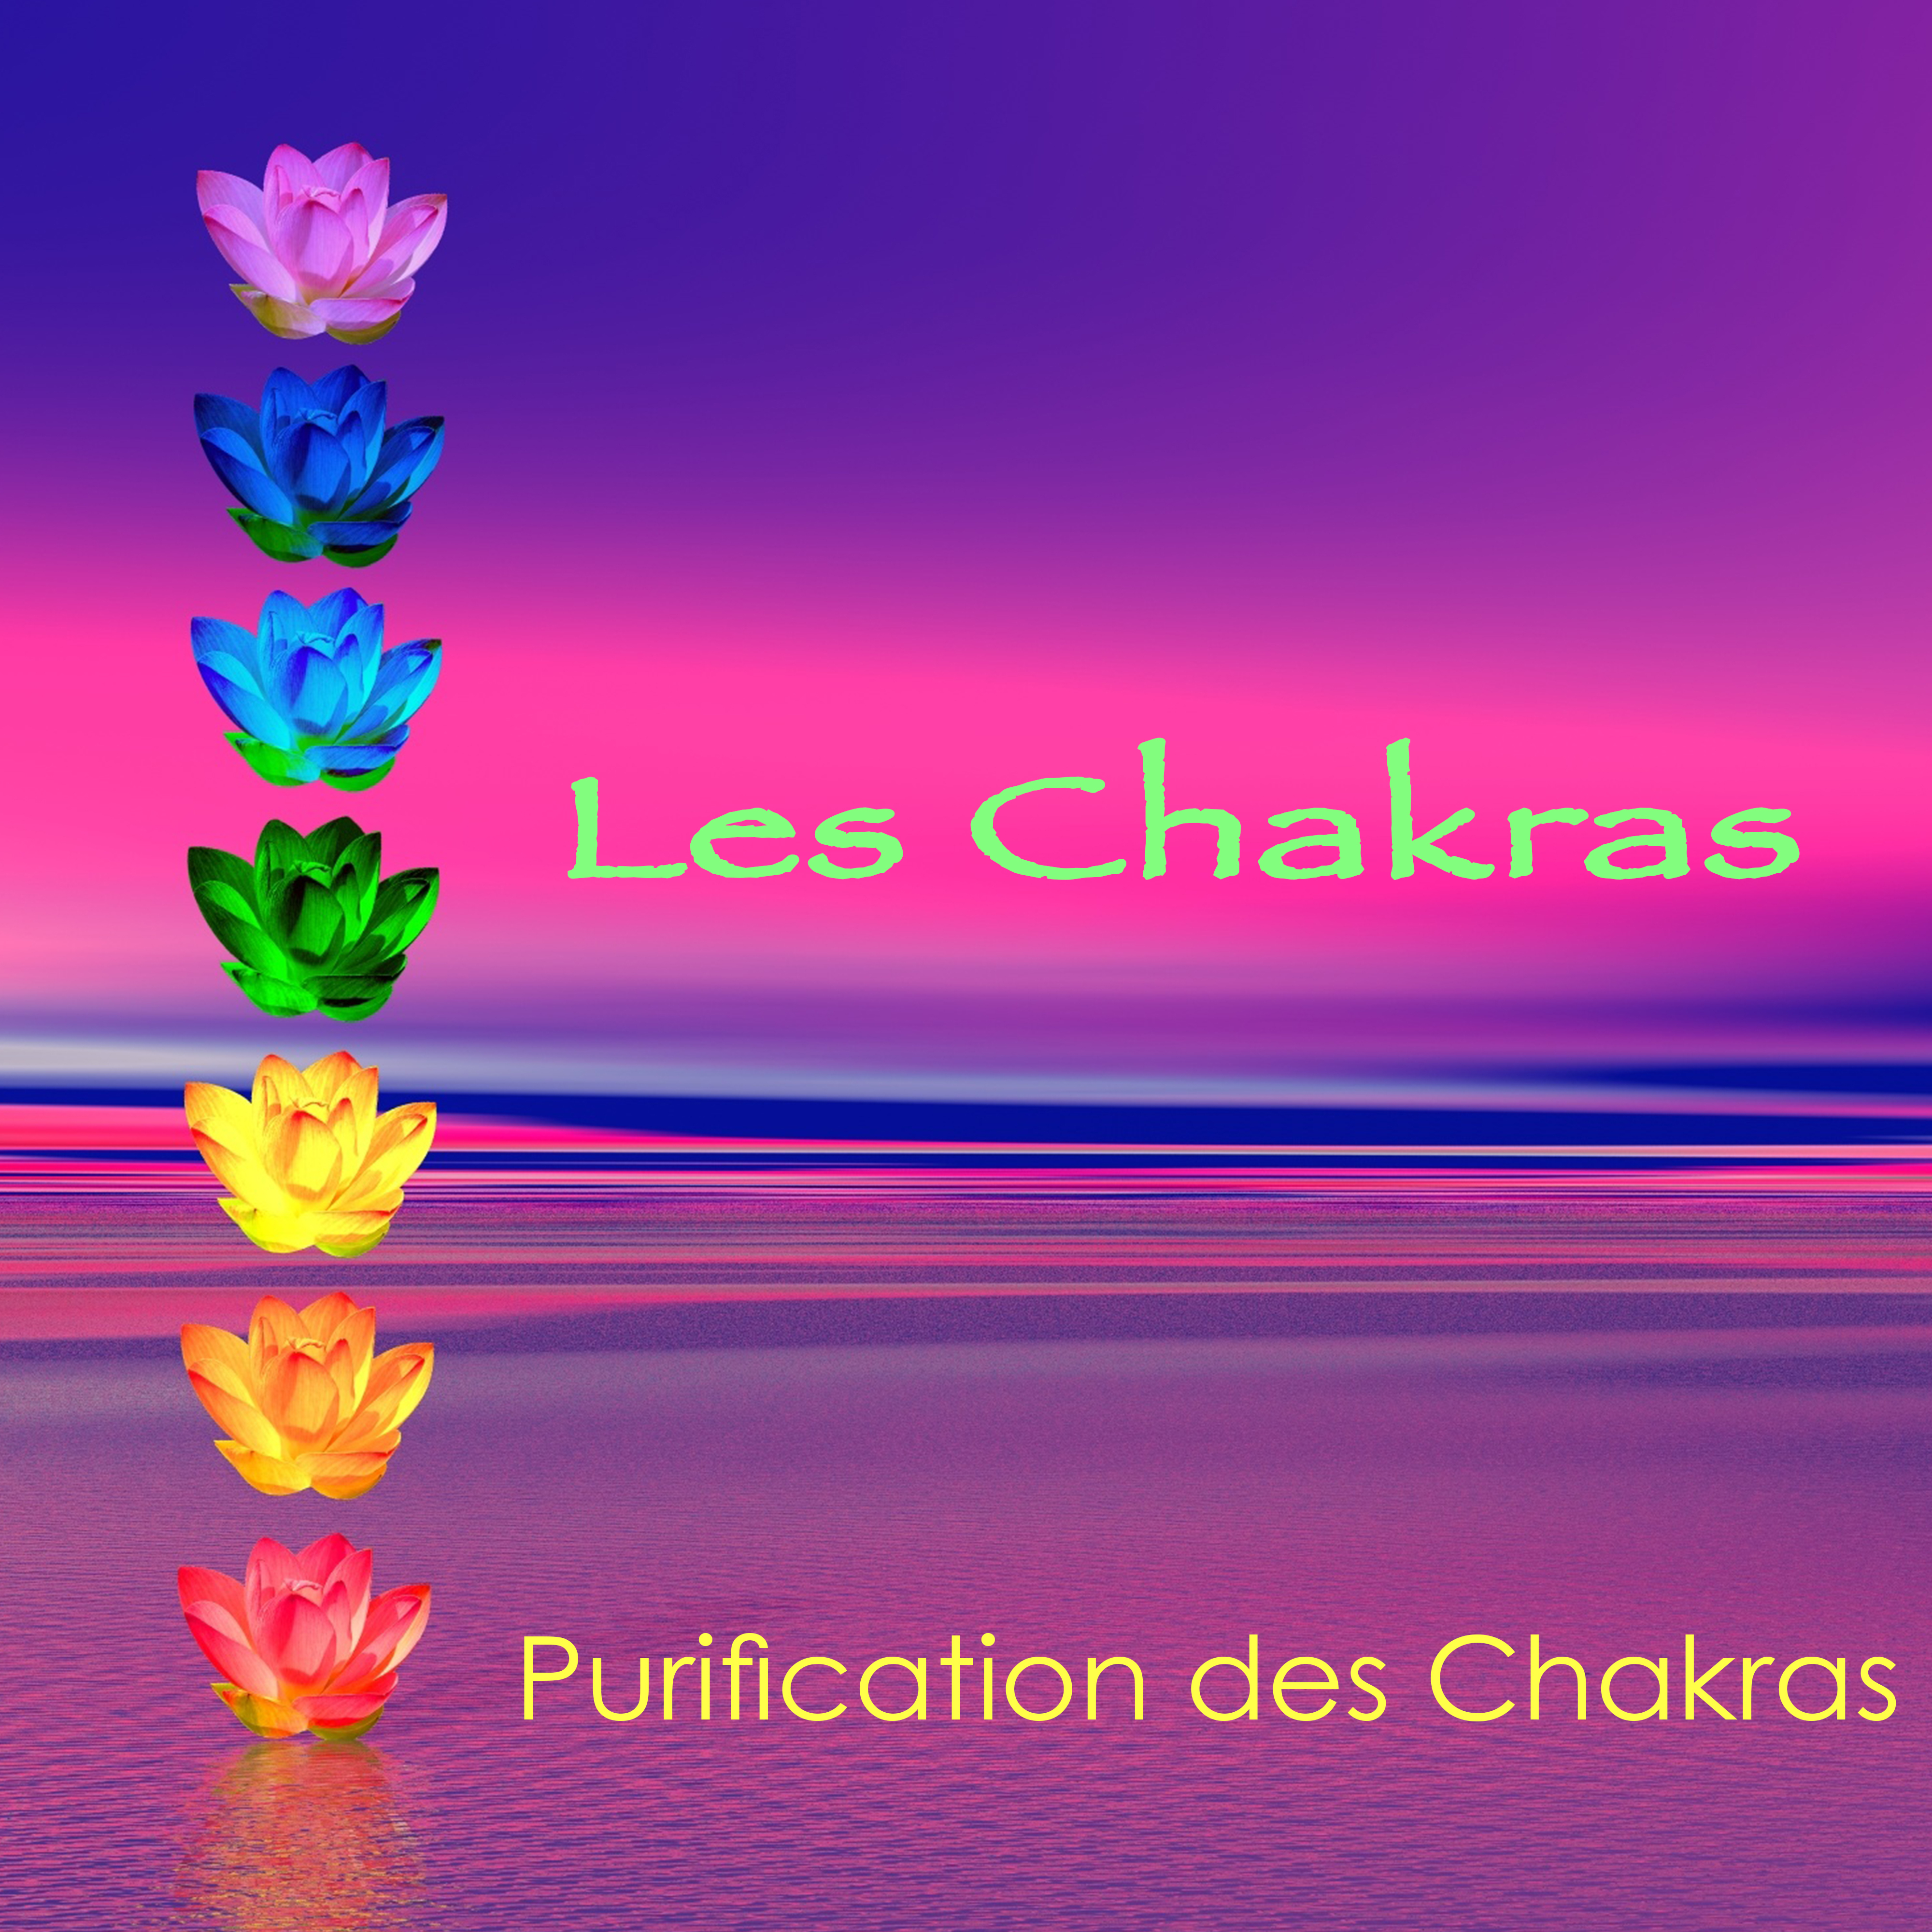 Les Chakras  Purification des Chakras, musique relaxante de de tente pour l'e quilibrage des chakras et l'e veil spirituel